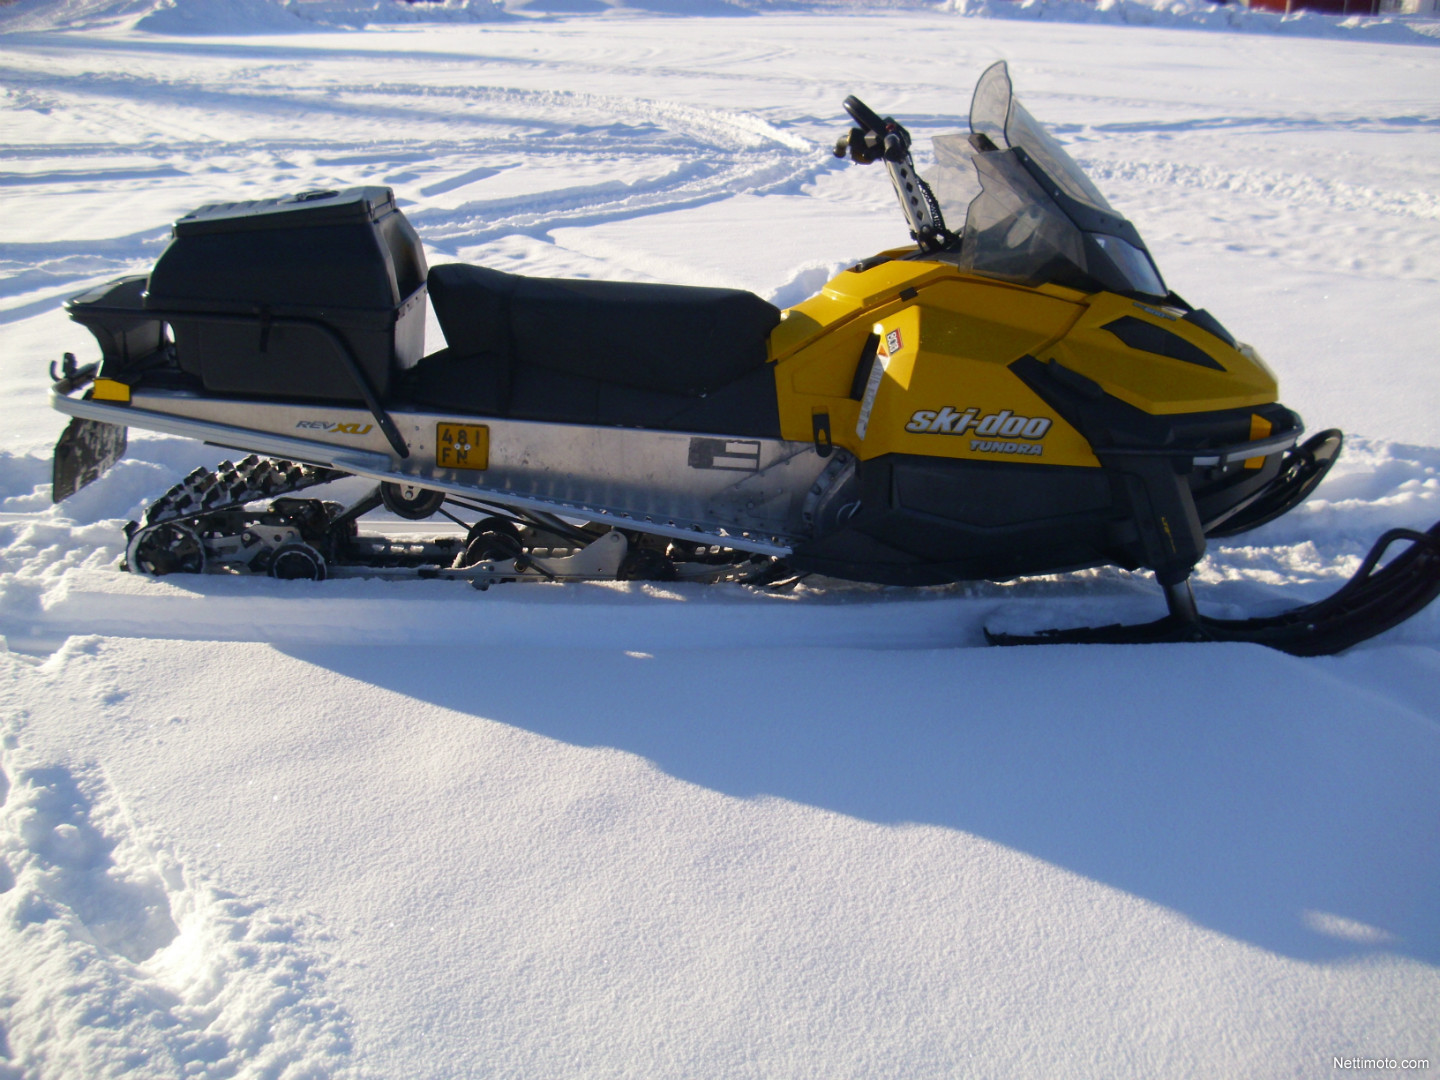 Купить снегоход скидо 600. Ski Doo Tundra 600 Ace. Ski-Doo Tundra lt 600 Ace. Снегоход BRP Tundra 600. BRP Ski-Doo Tundra 600.